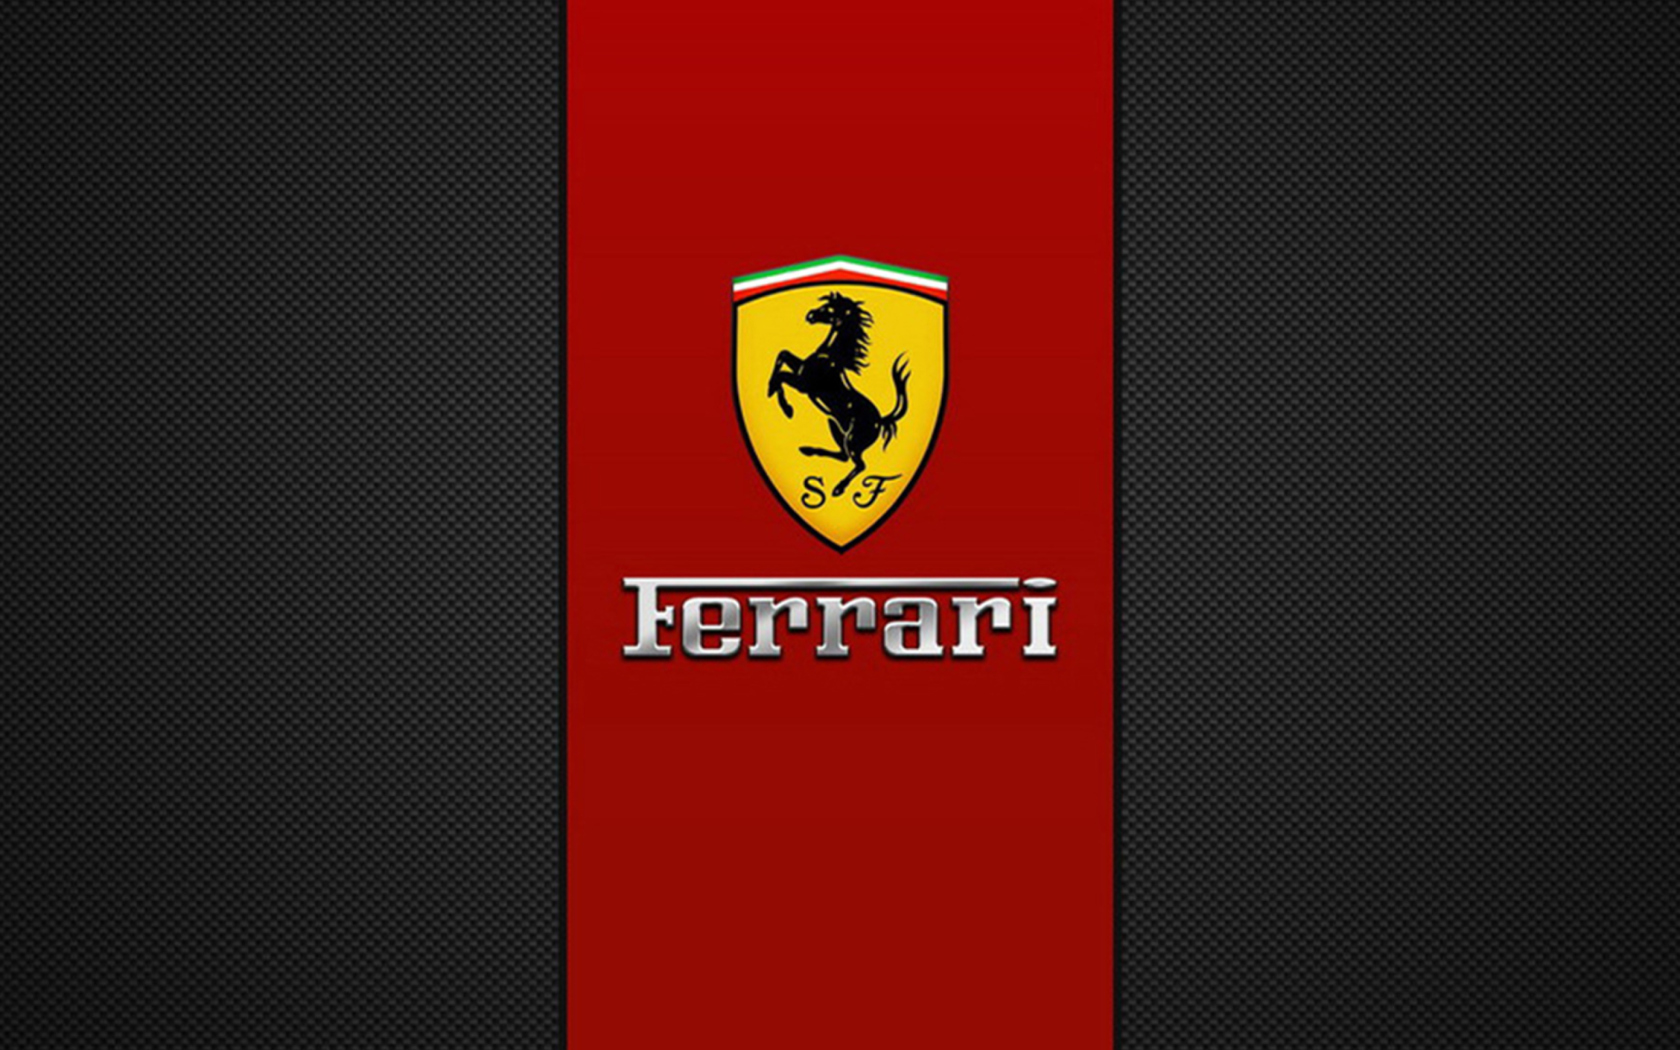 Ferrari Emblem wallpaper 1680x1050